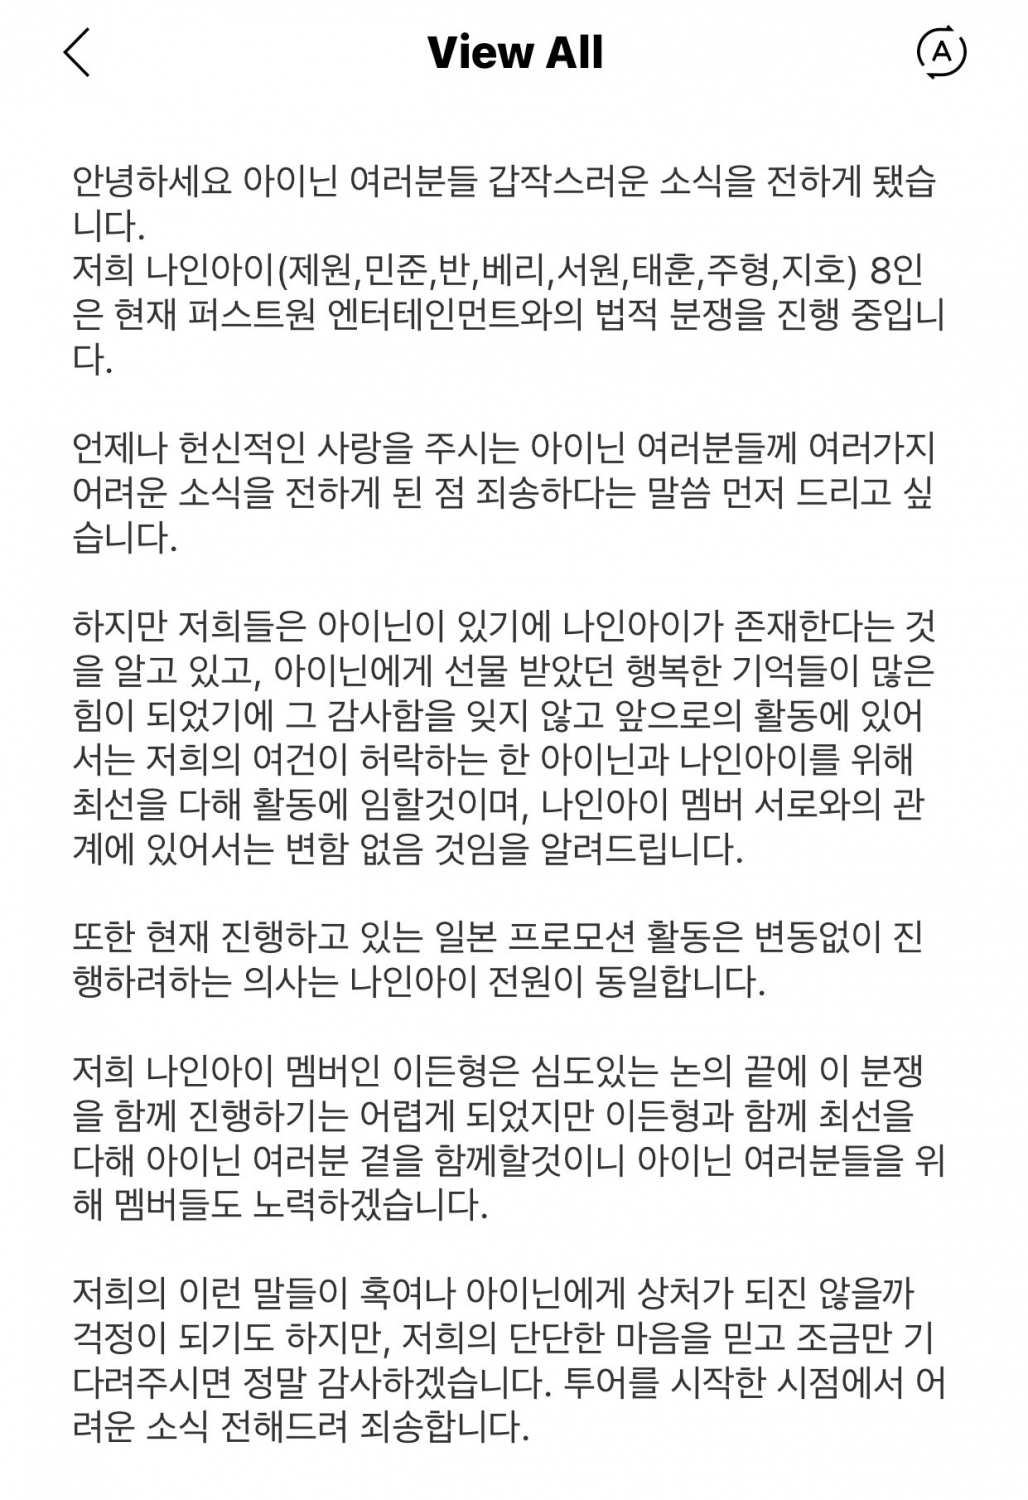 ESTE grupo novato de K-pop expõe disputa legal contra agência por meio de plataforma de fãs – aqui está o que aconteceu